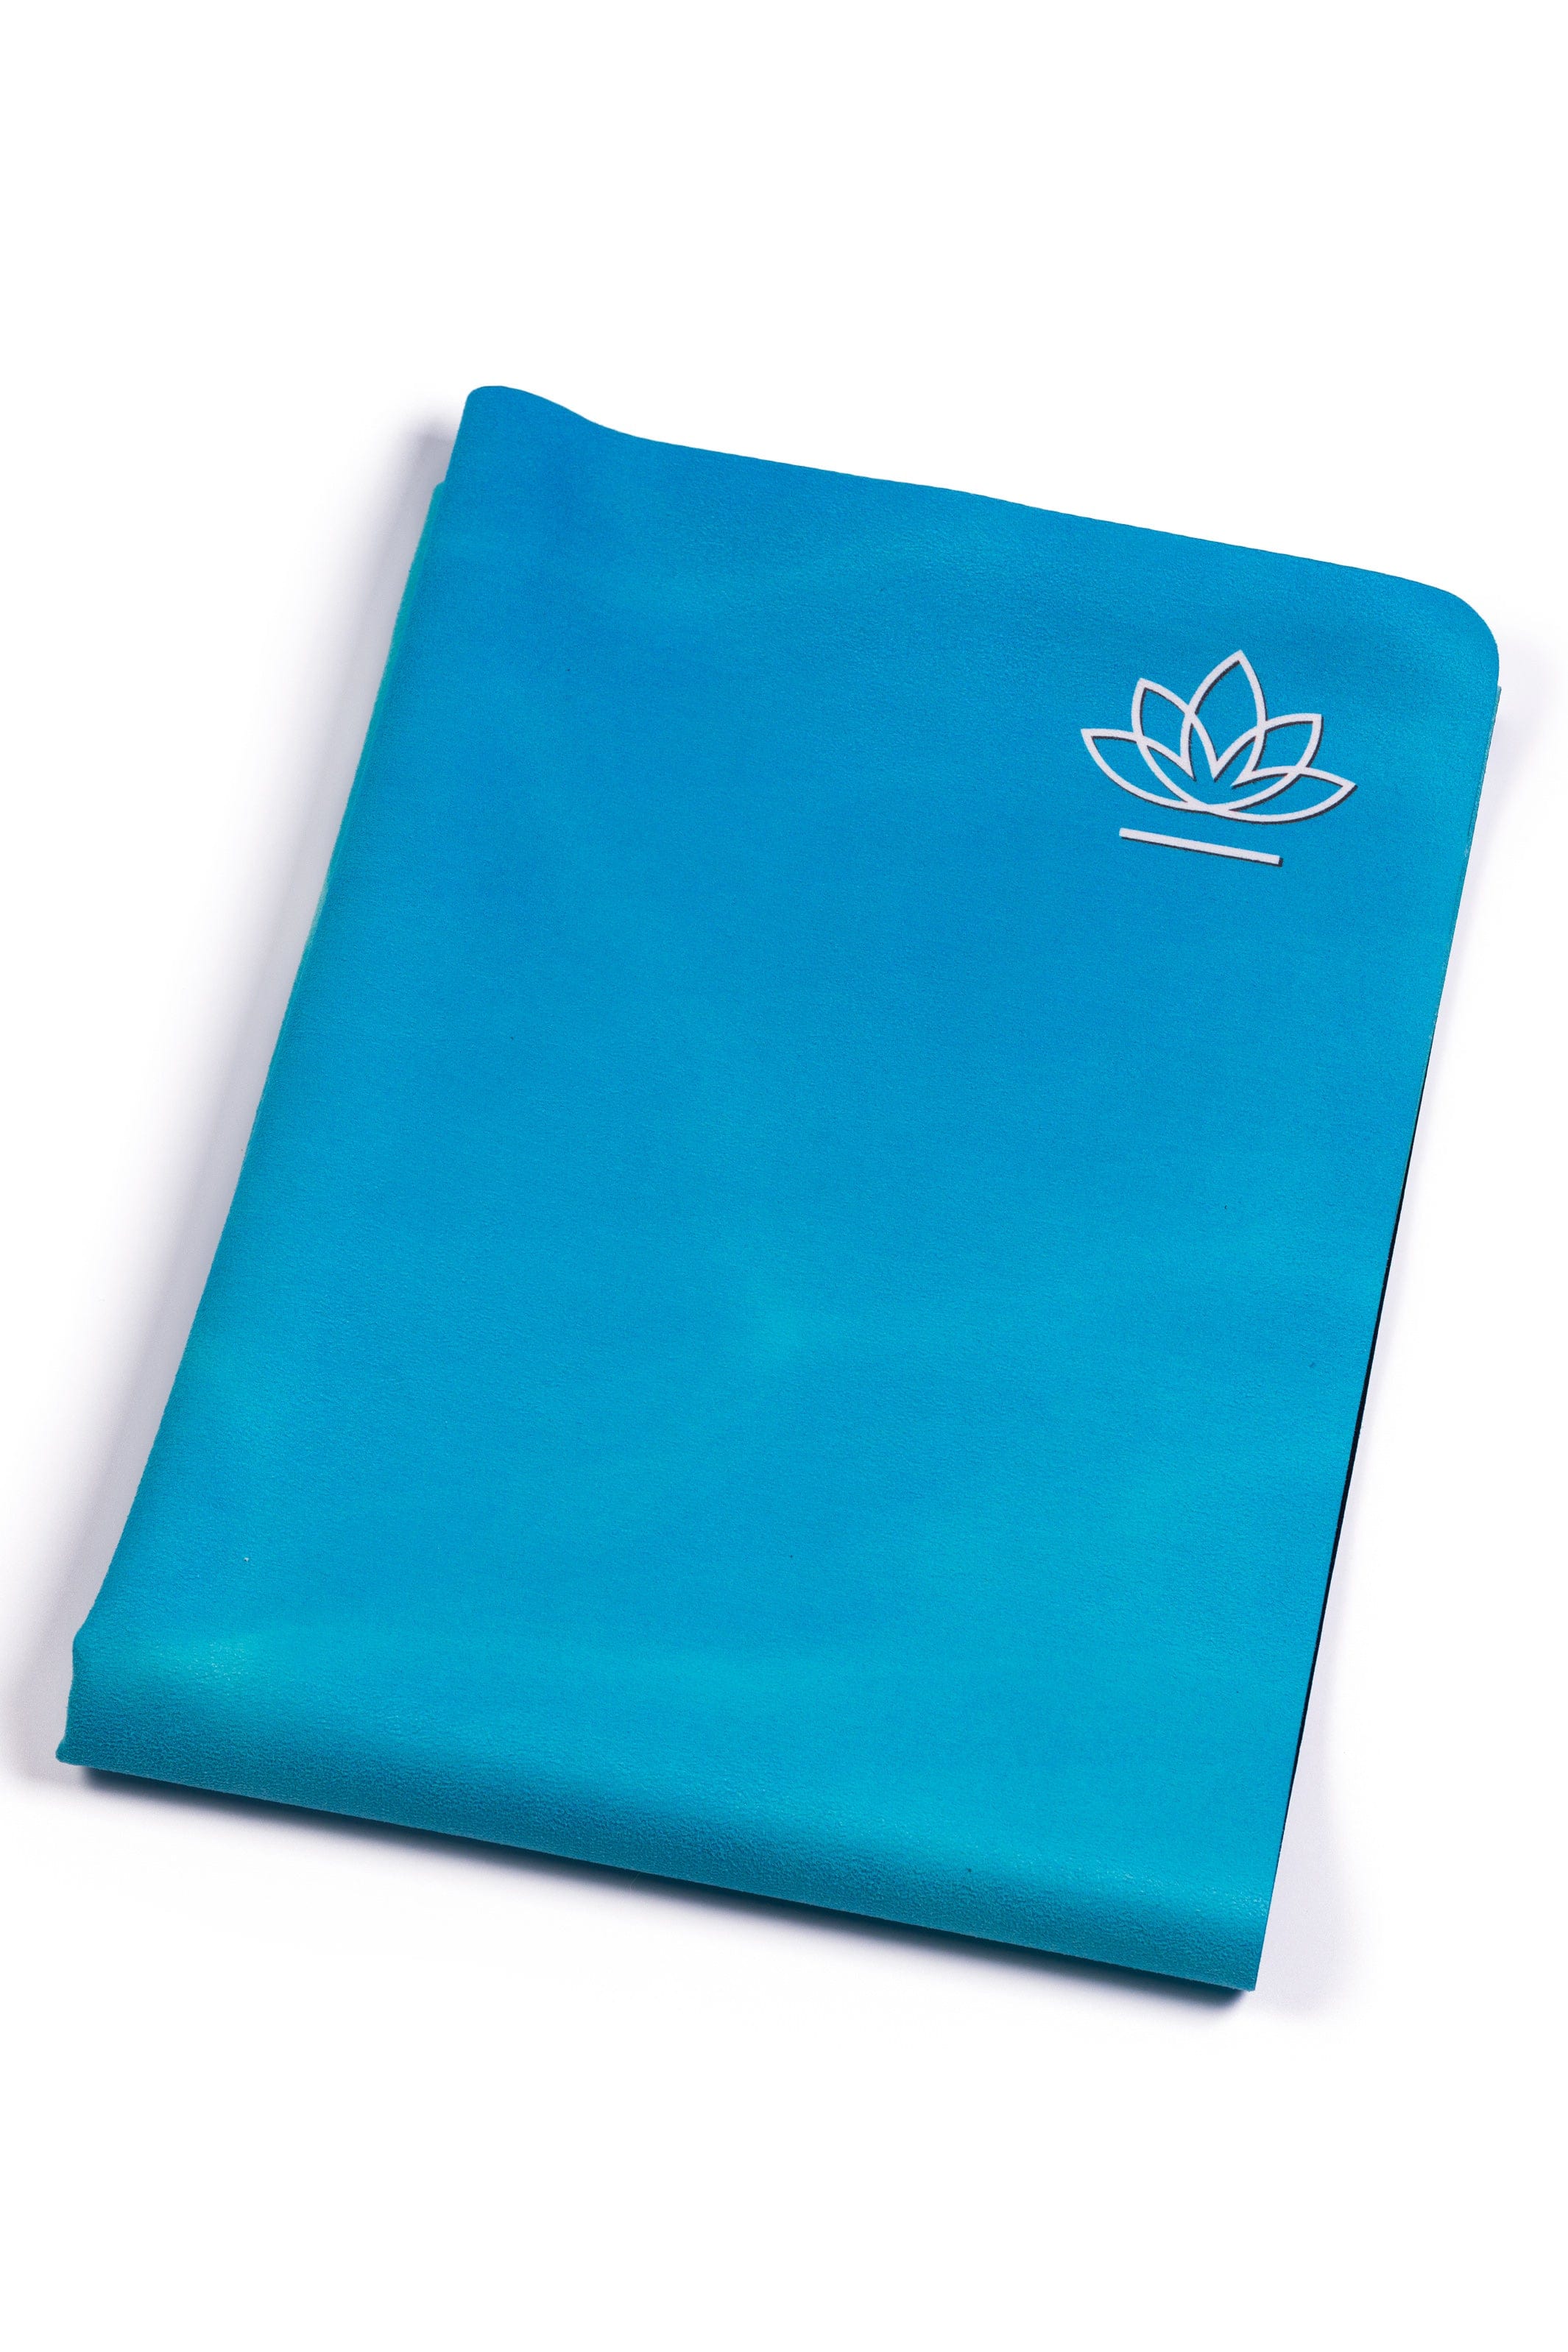 Luxury 3mm Sustainable Yoga Mats - Luxya Australia